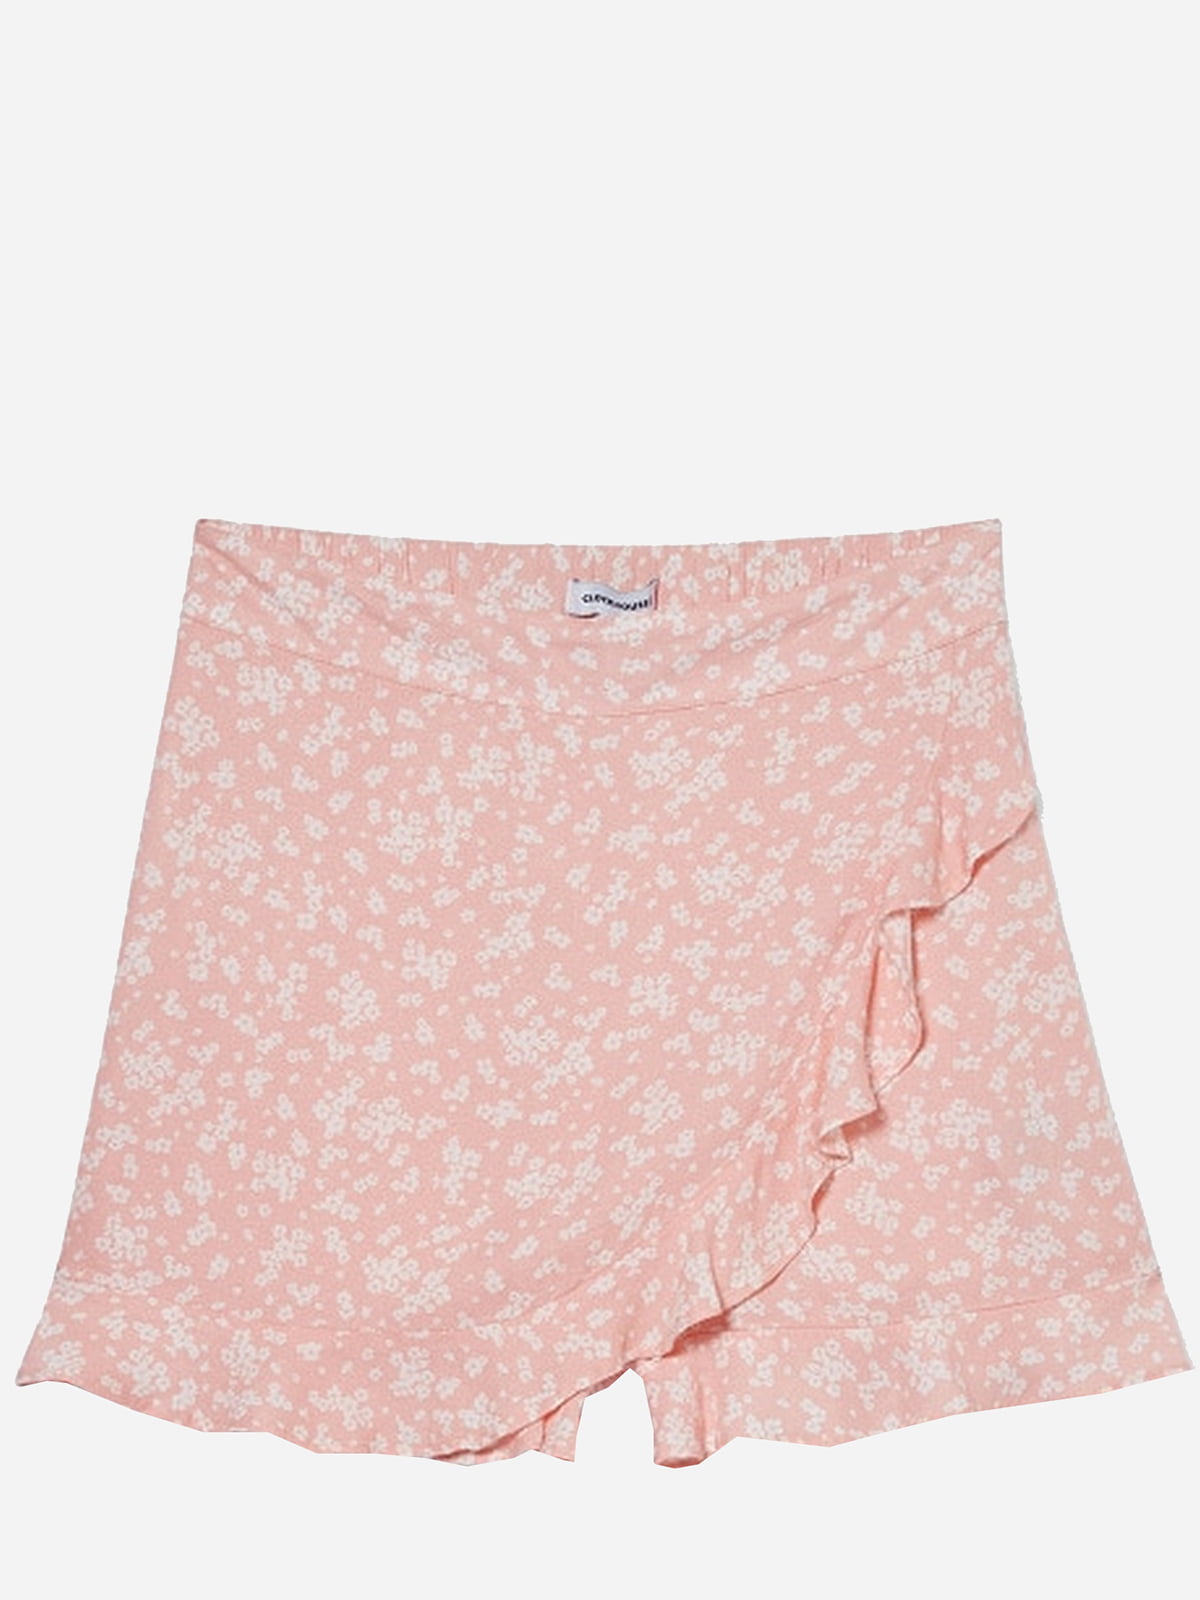 Шорты-юбка розовые с цветочным принтом | 6271485